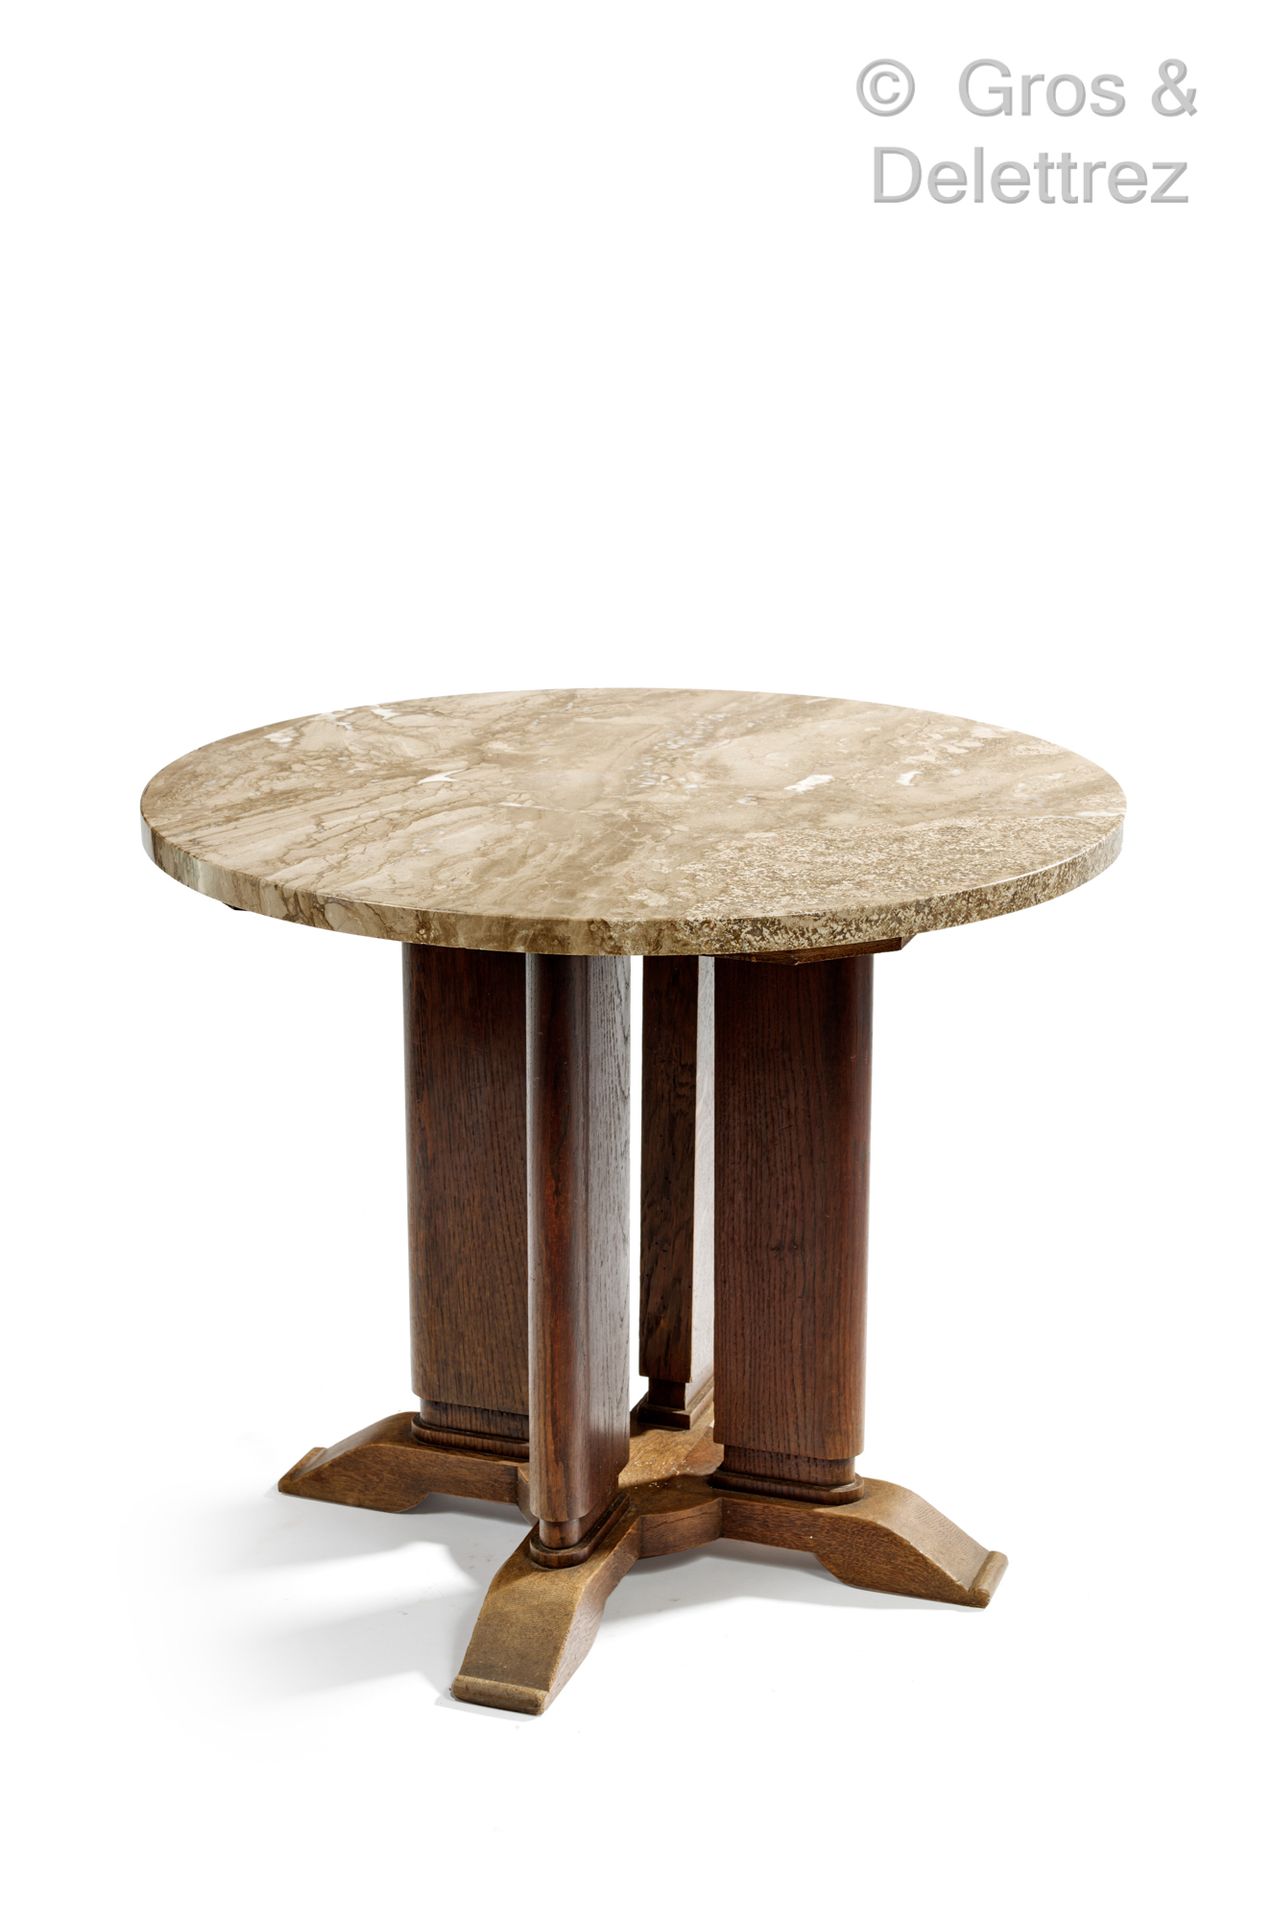 Null 儒勒-勒鲁(1883-1961)

N°02527号基座桌，米色大理石圆形桌面，置于直的橡木底座上。

创建于1936年的模型

高：68厘米 直径：&hellip;